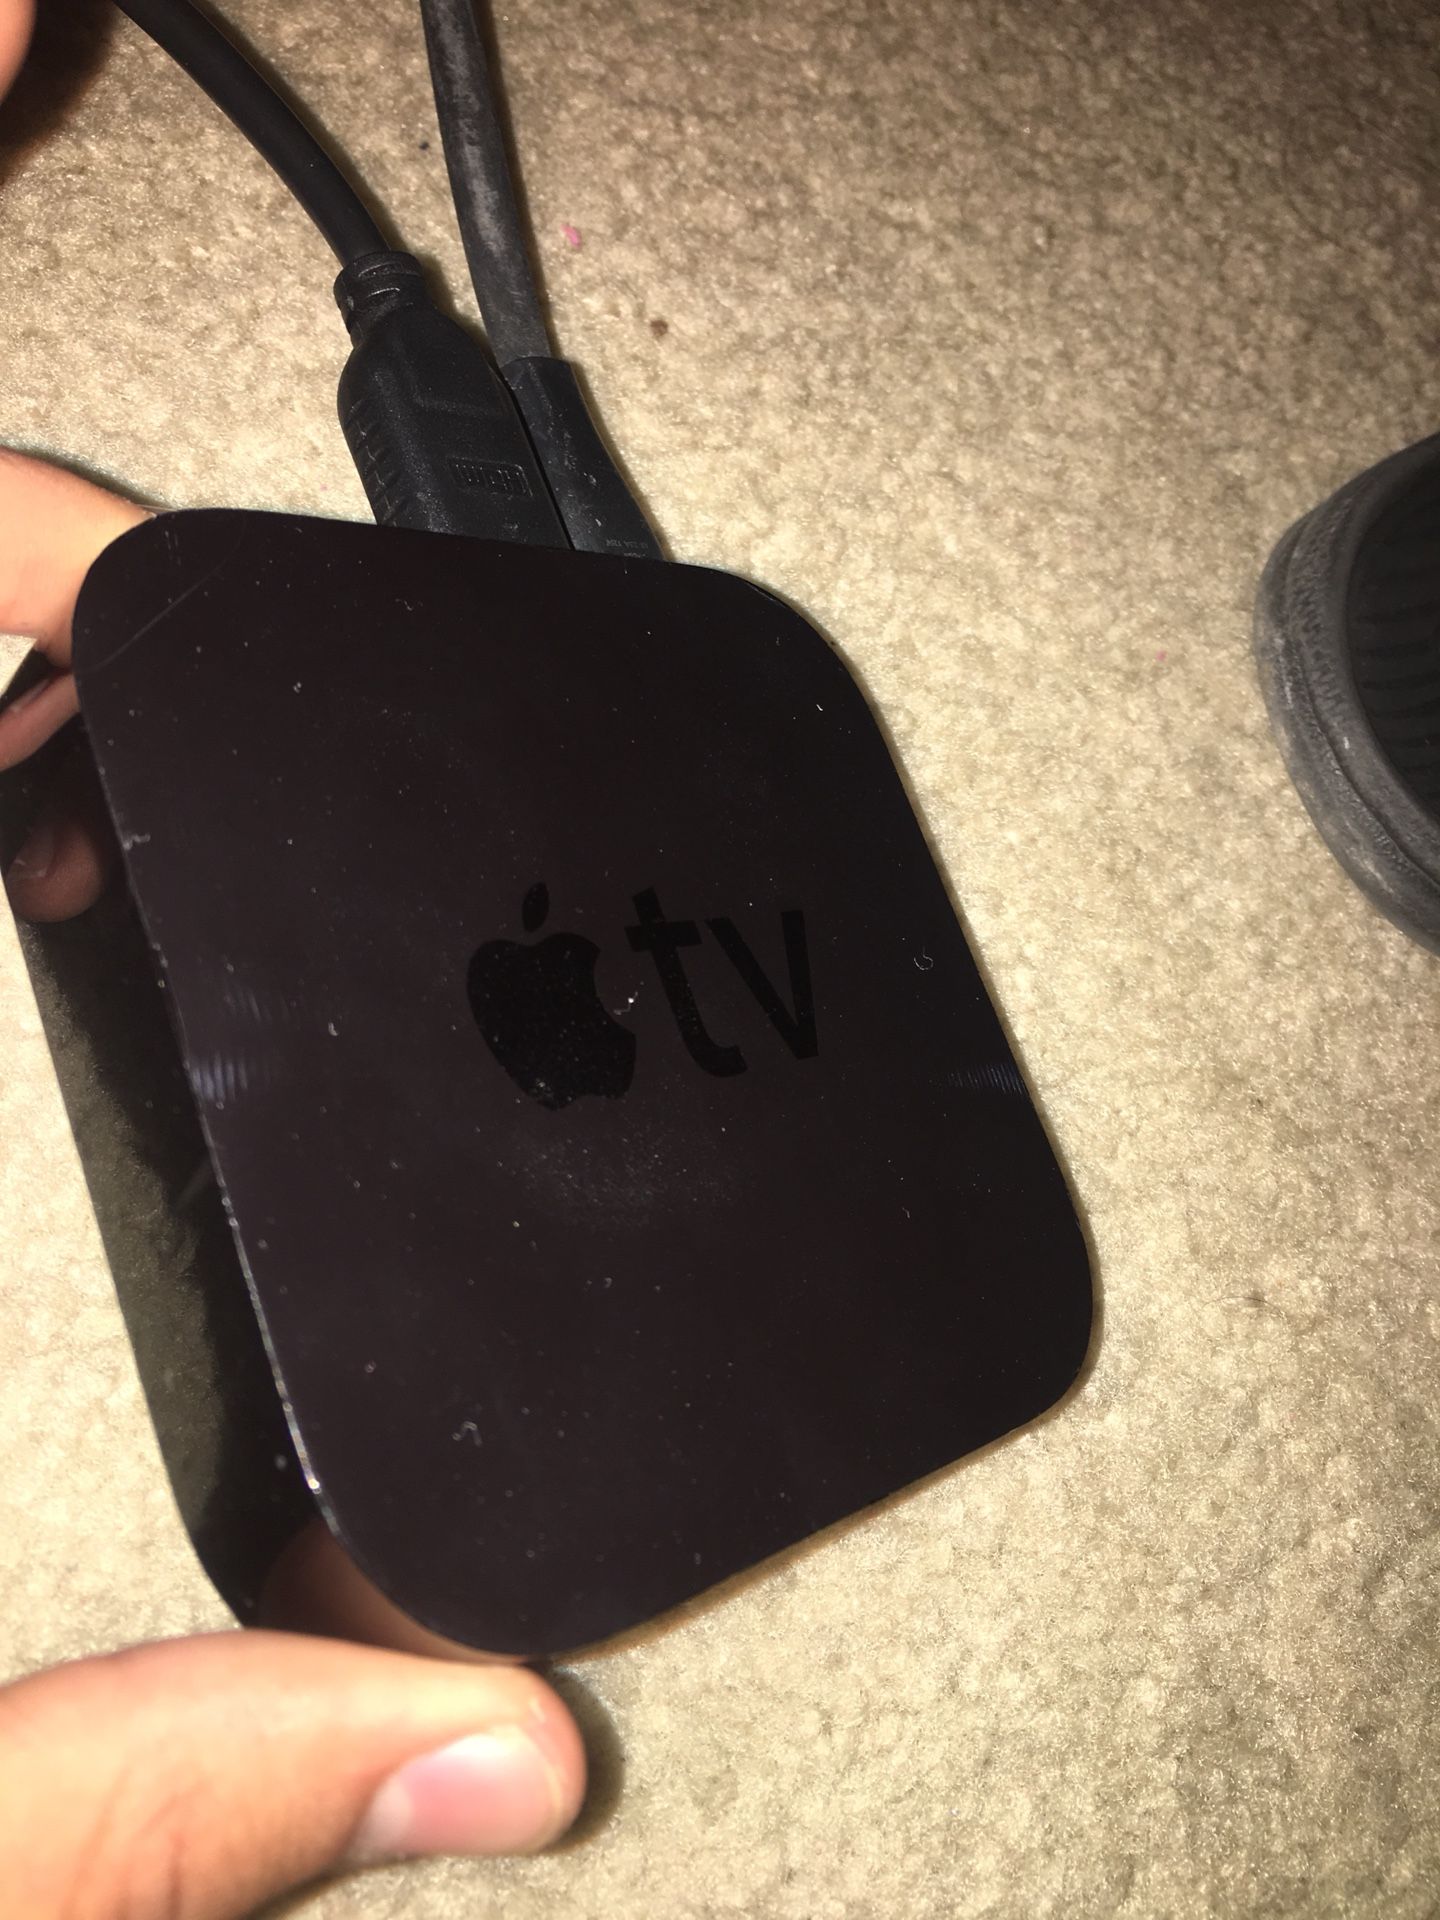 Apple TV 3rd Gen need gone asap